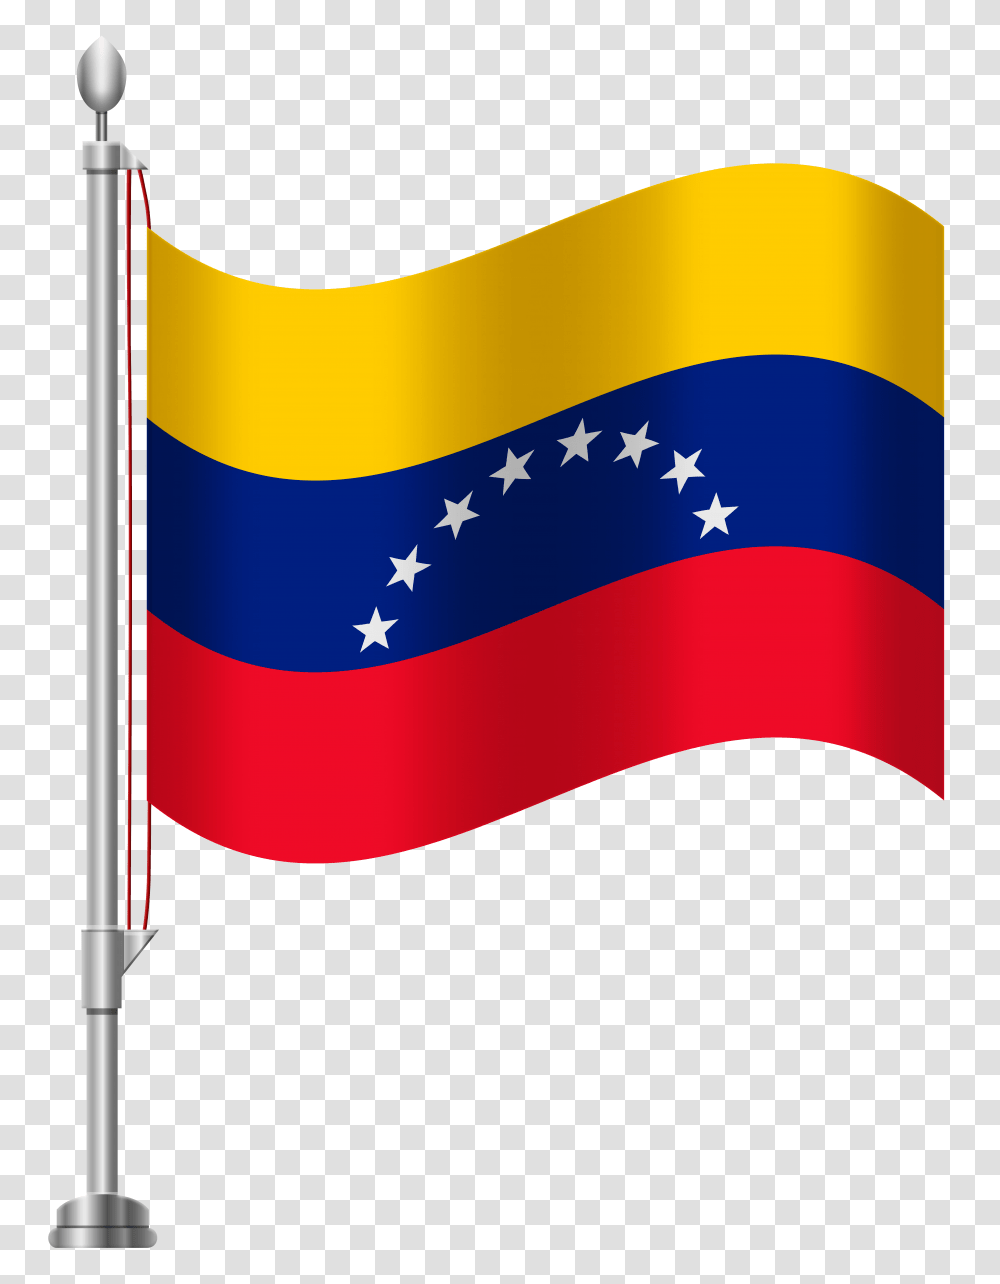 Venezuela Flag Clip Art, American Flag Transparent Png